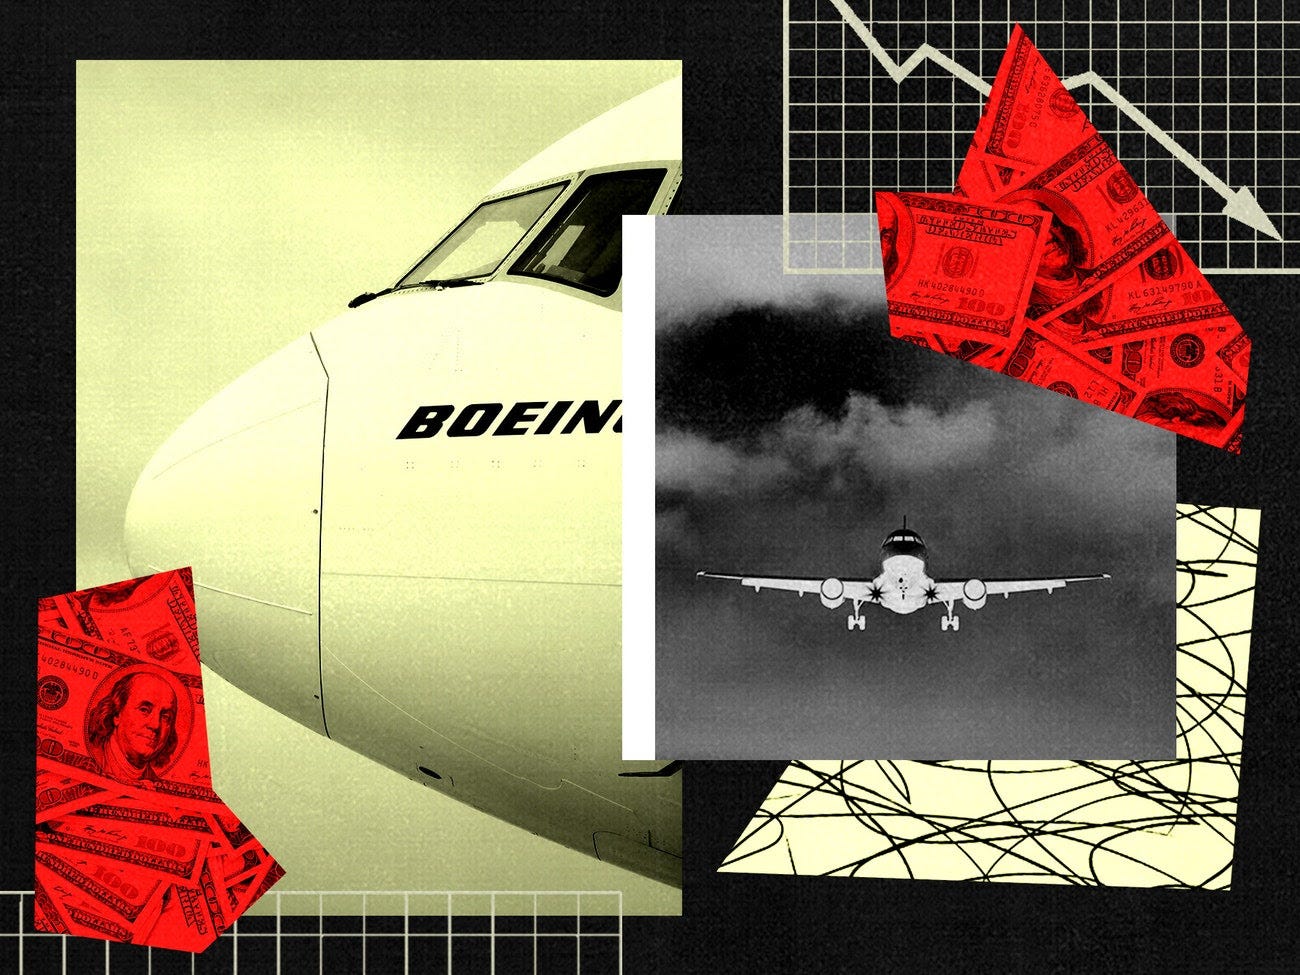 Eine Fotocollage aus einem Boeing-Flugzeug, Geld und Grafiken.